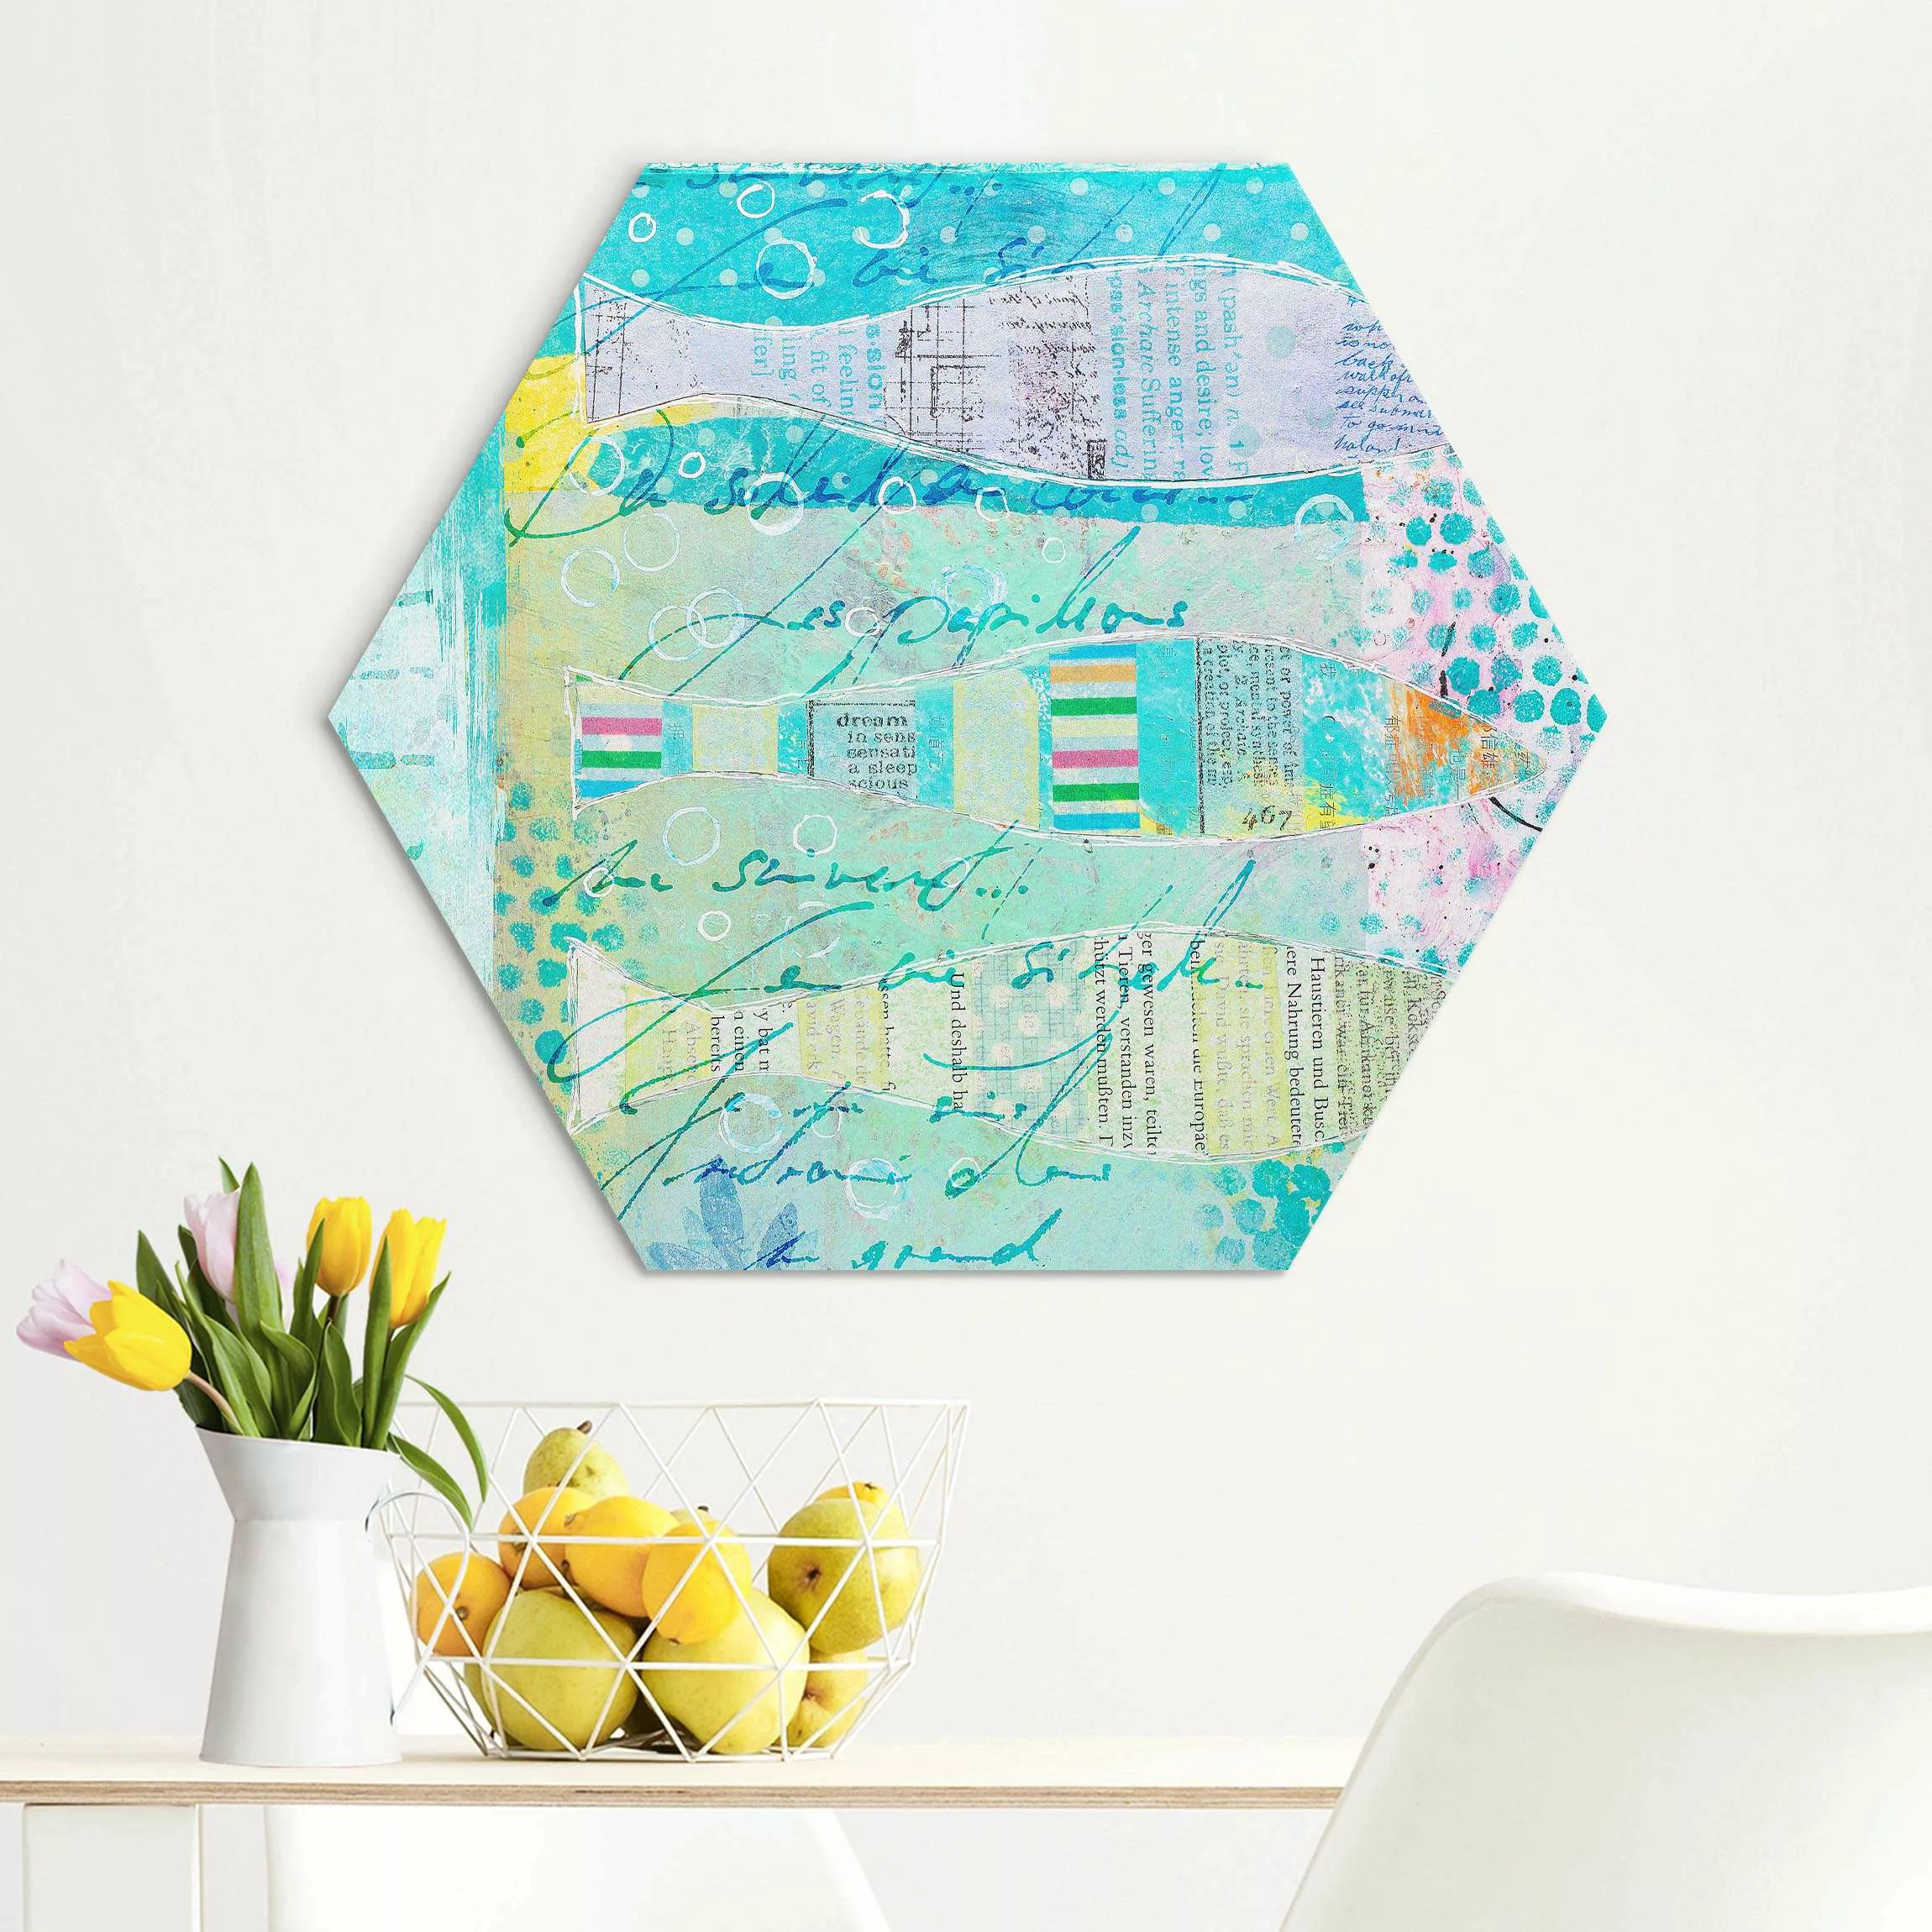 Hexagon-Alu-Dibond Bild Bunte Collage - Fische und Punkte günstig online kaufen